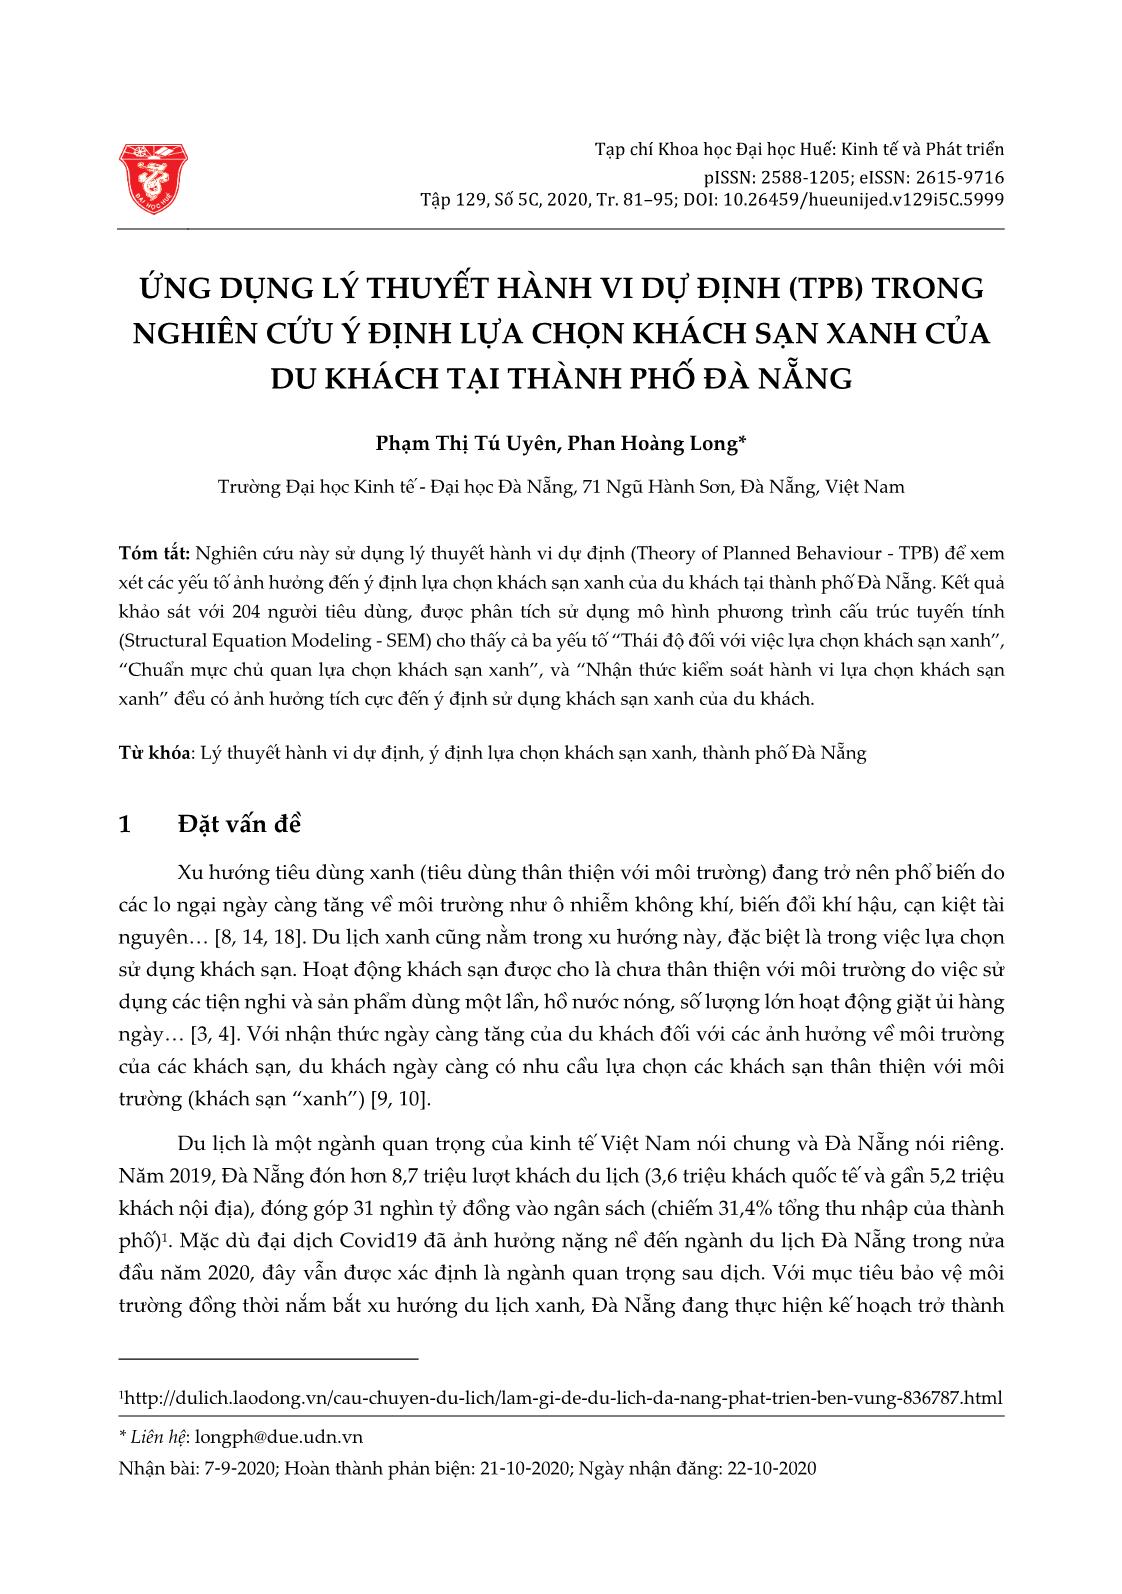 Ứng dụng lý thuyết hành vi dự định (TPB) trong nghiên cứu ý định lựa chọn khách sạn xanh của du khách tại thành phố Đà Nẵng trang 1